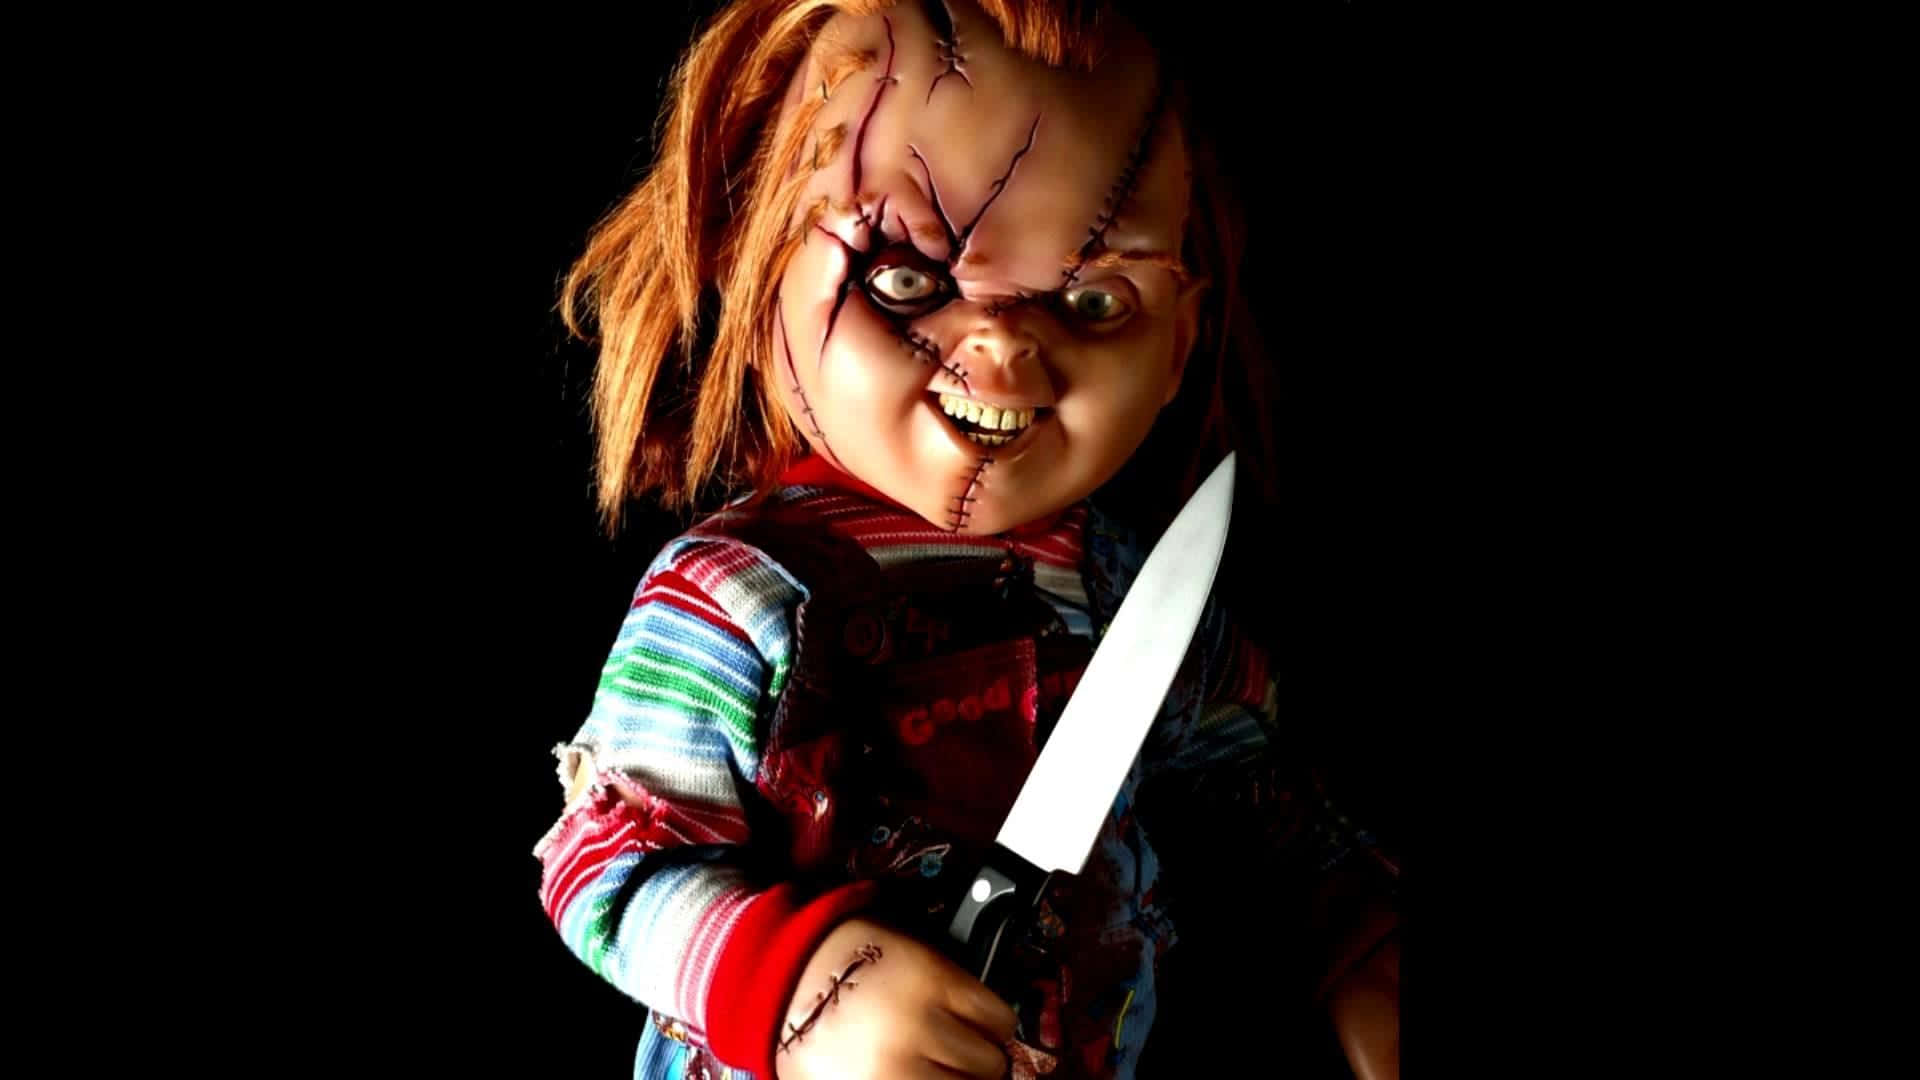 En skræmmende scene med en Chucky-dukke, der kigger direkte på kameraet. Wallpaper